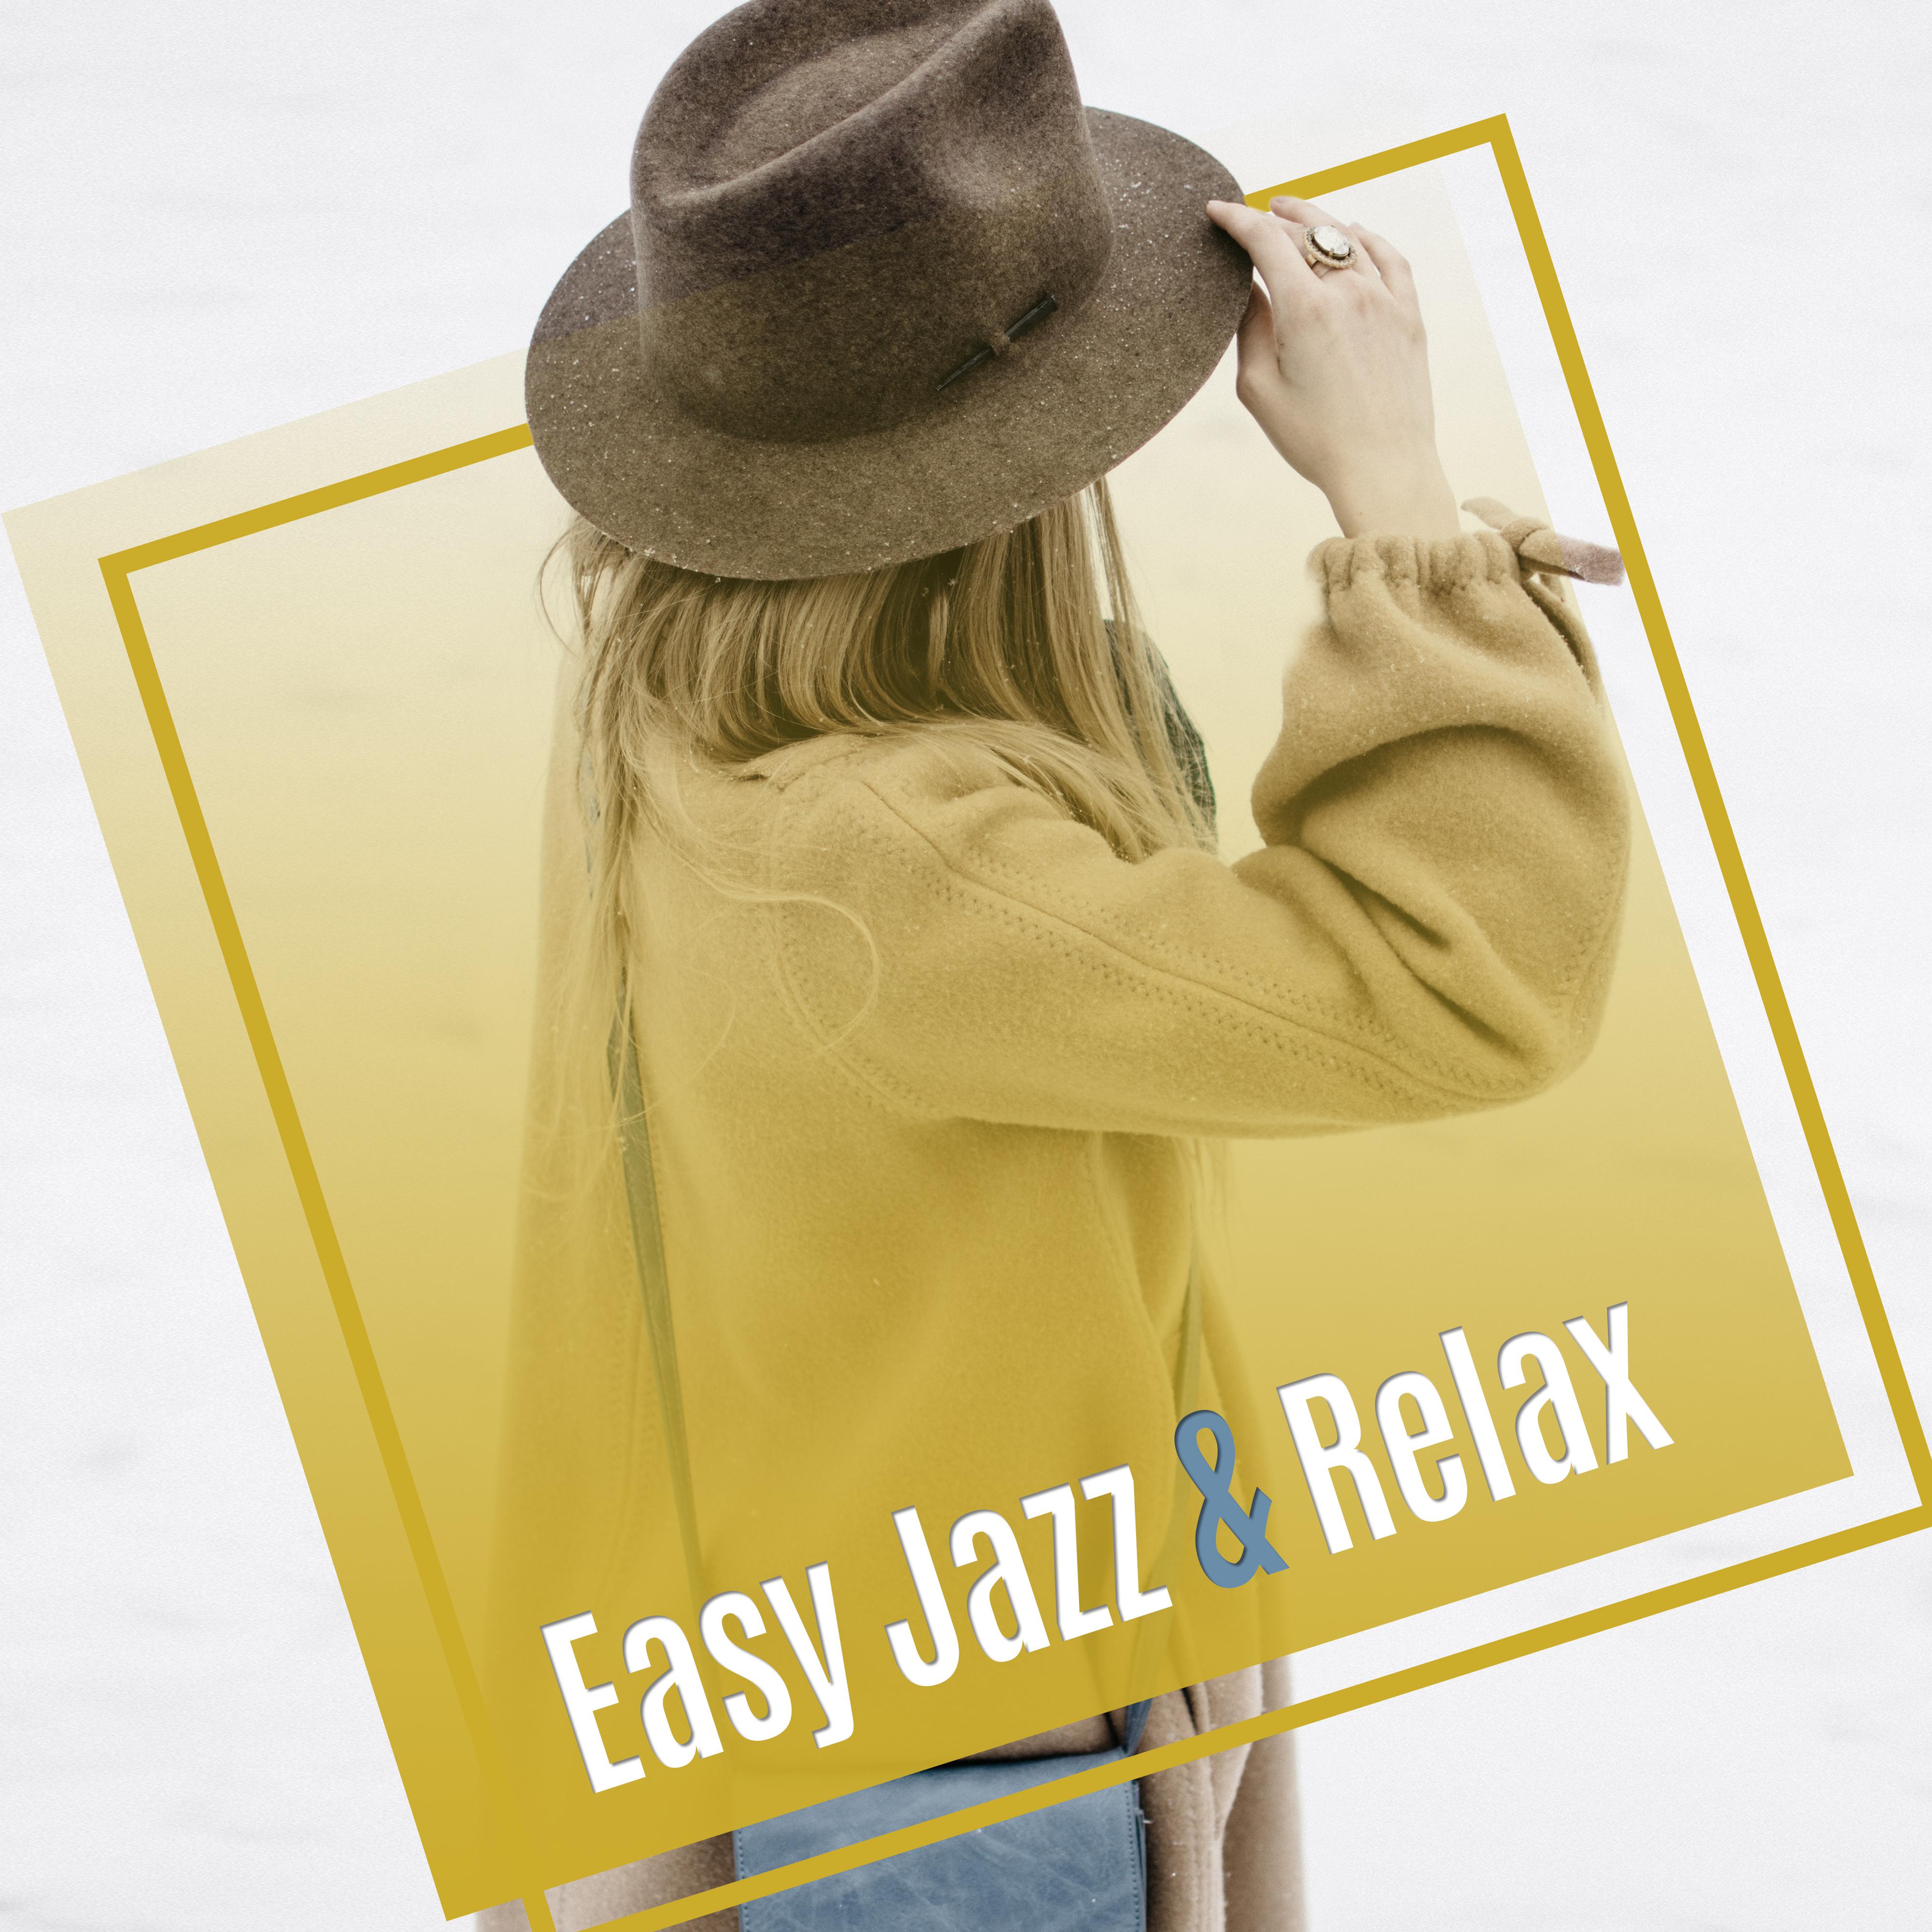 Easy Jazz & Relax